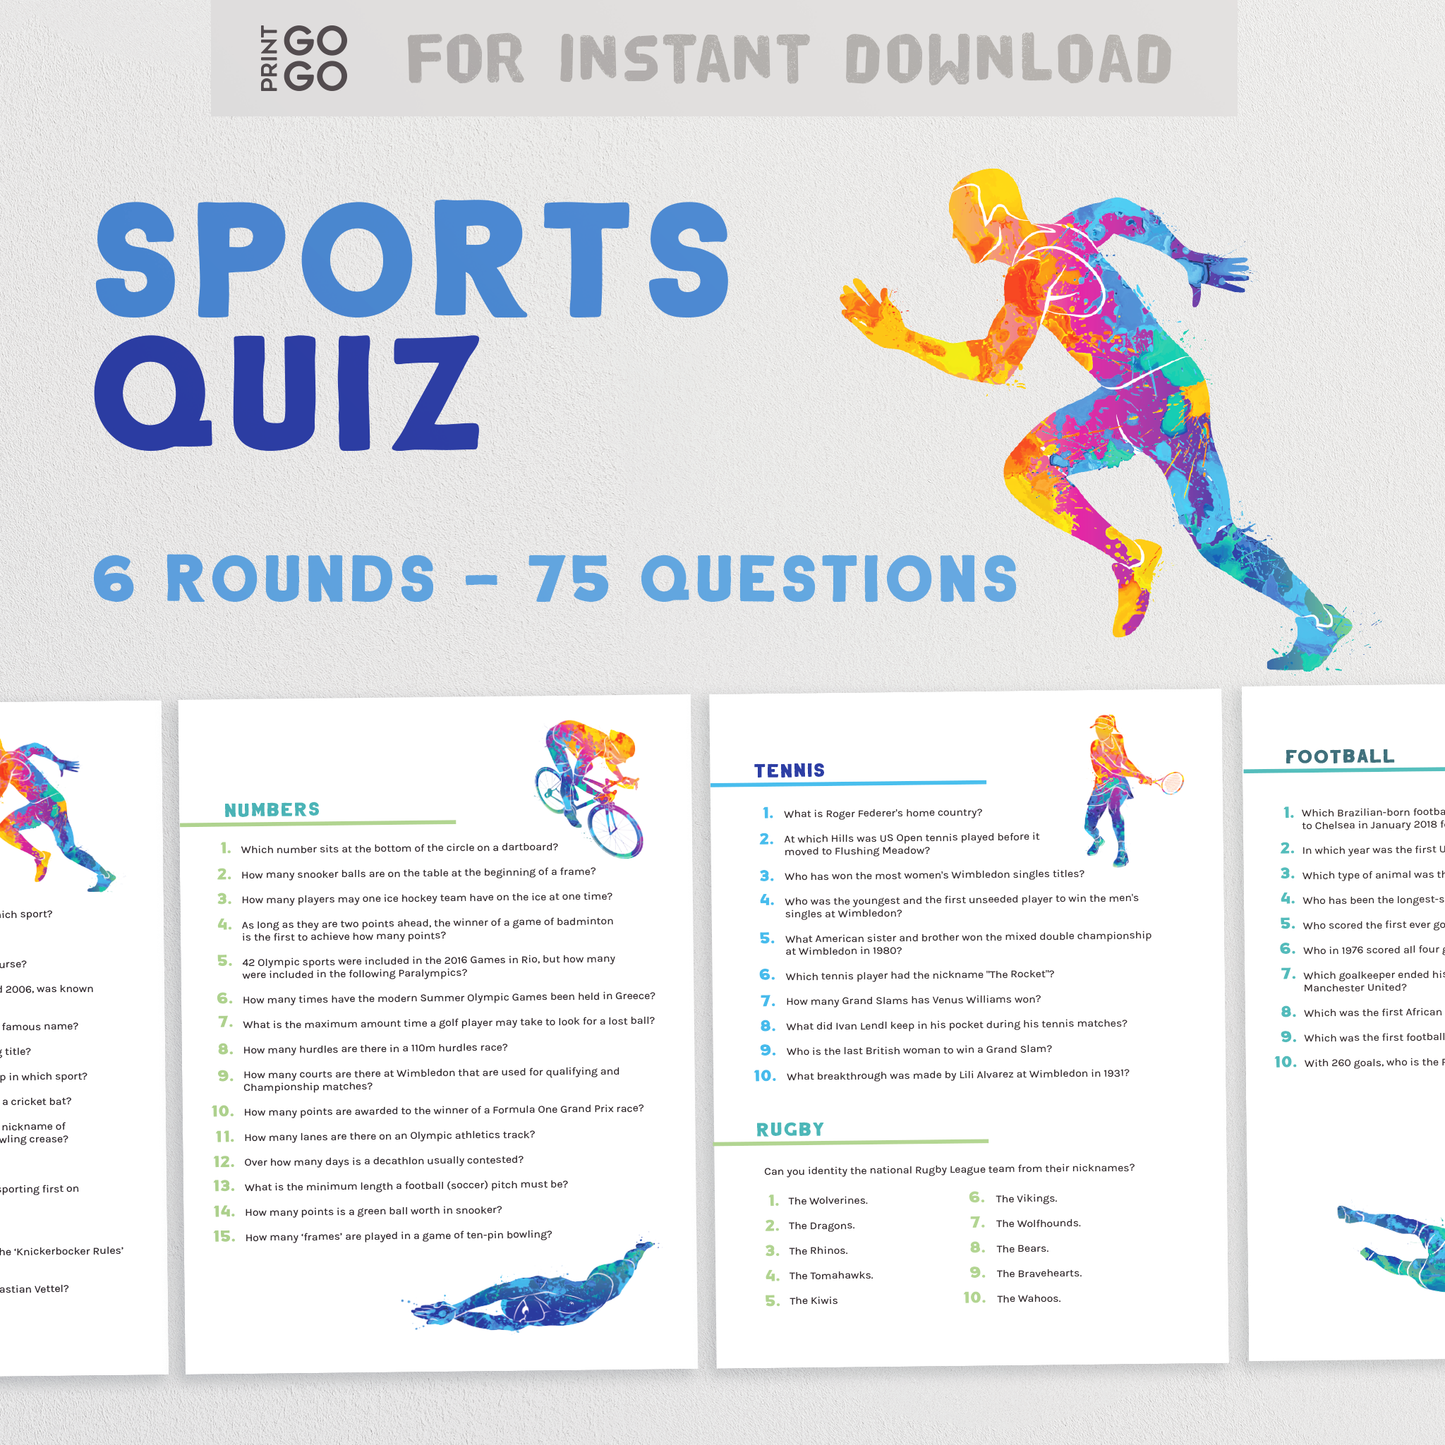 Sports Trivia Quiz